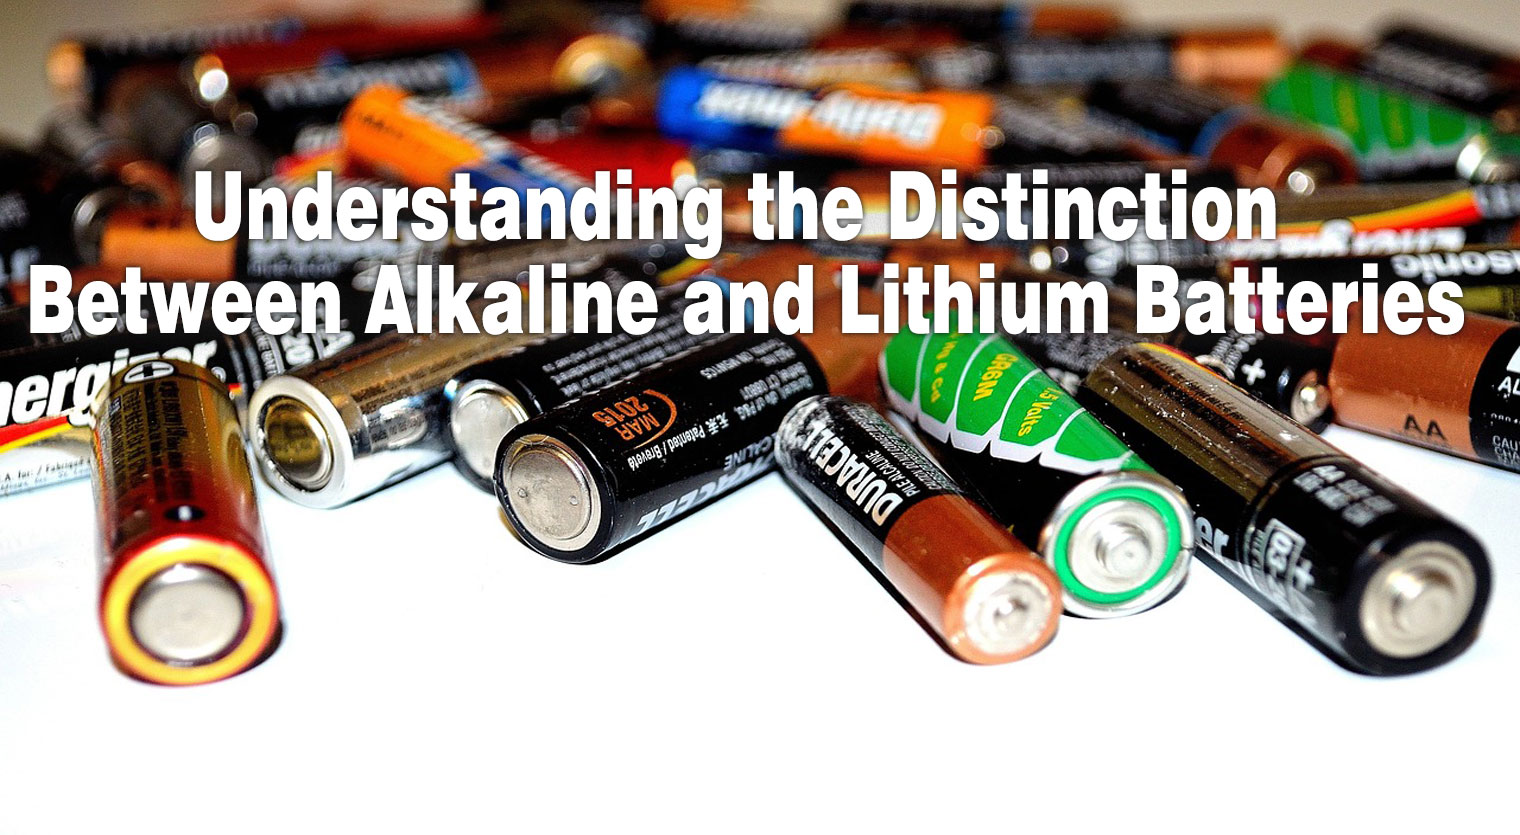 Understanding the Distinction Between Alkaline and Lithium Batteries